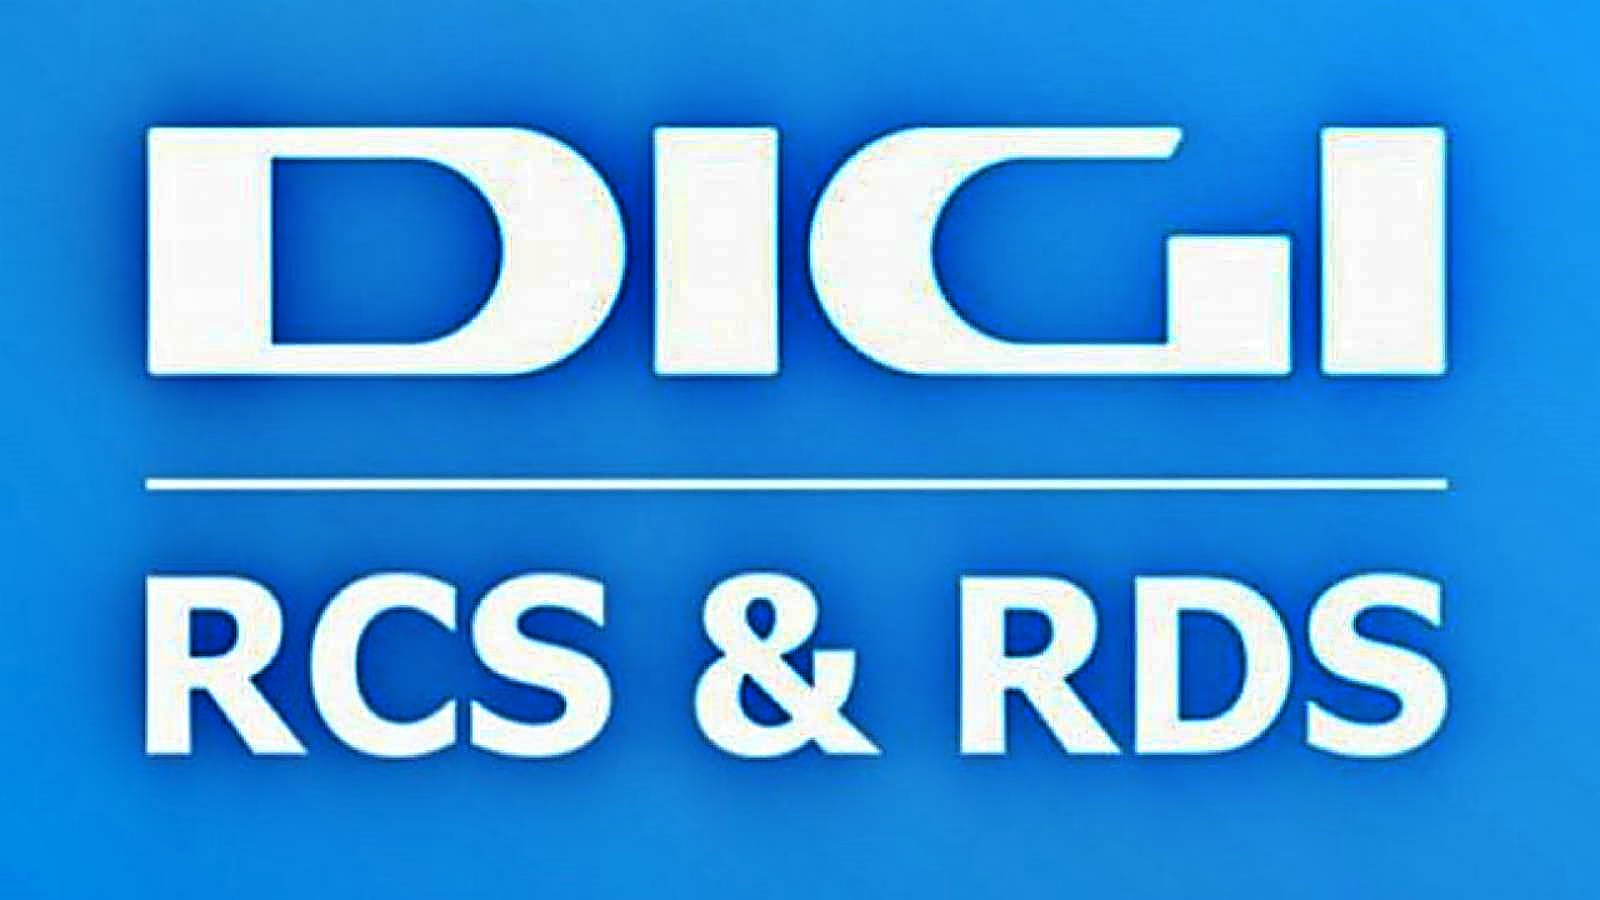 RCS & RDS OFFICIELLE oplysninger er rettet mod rumænske kunder